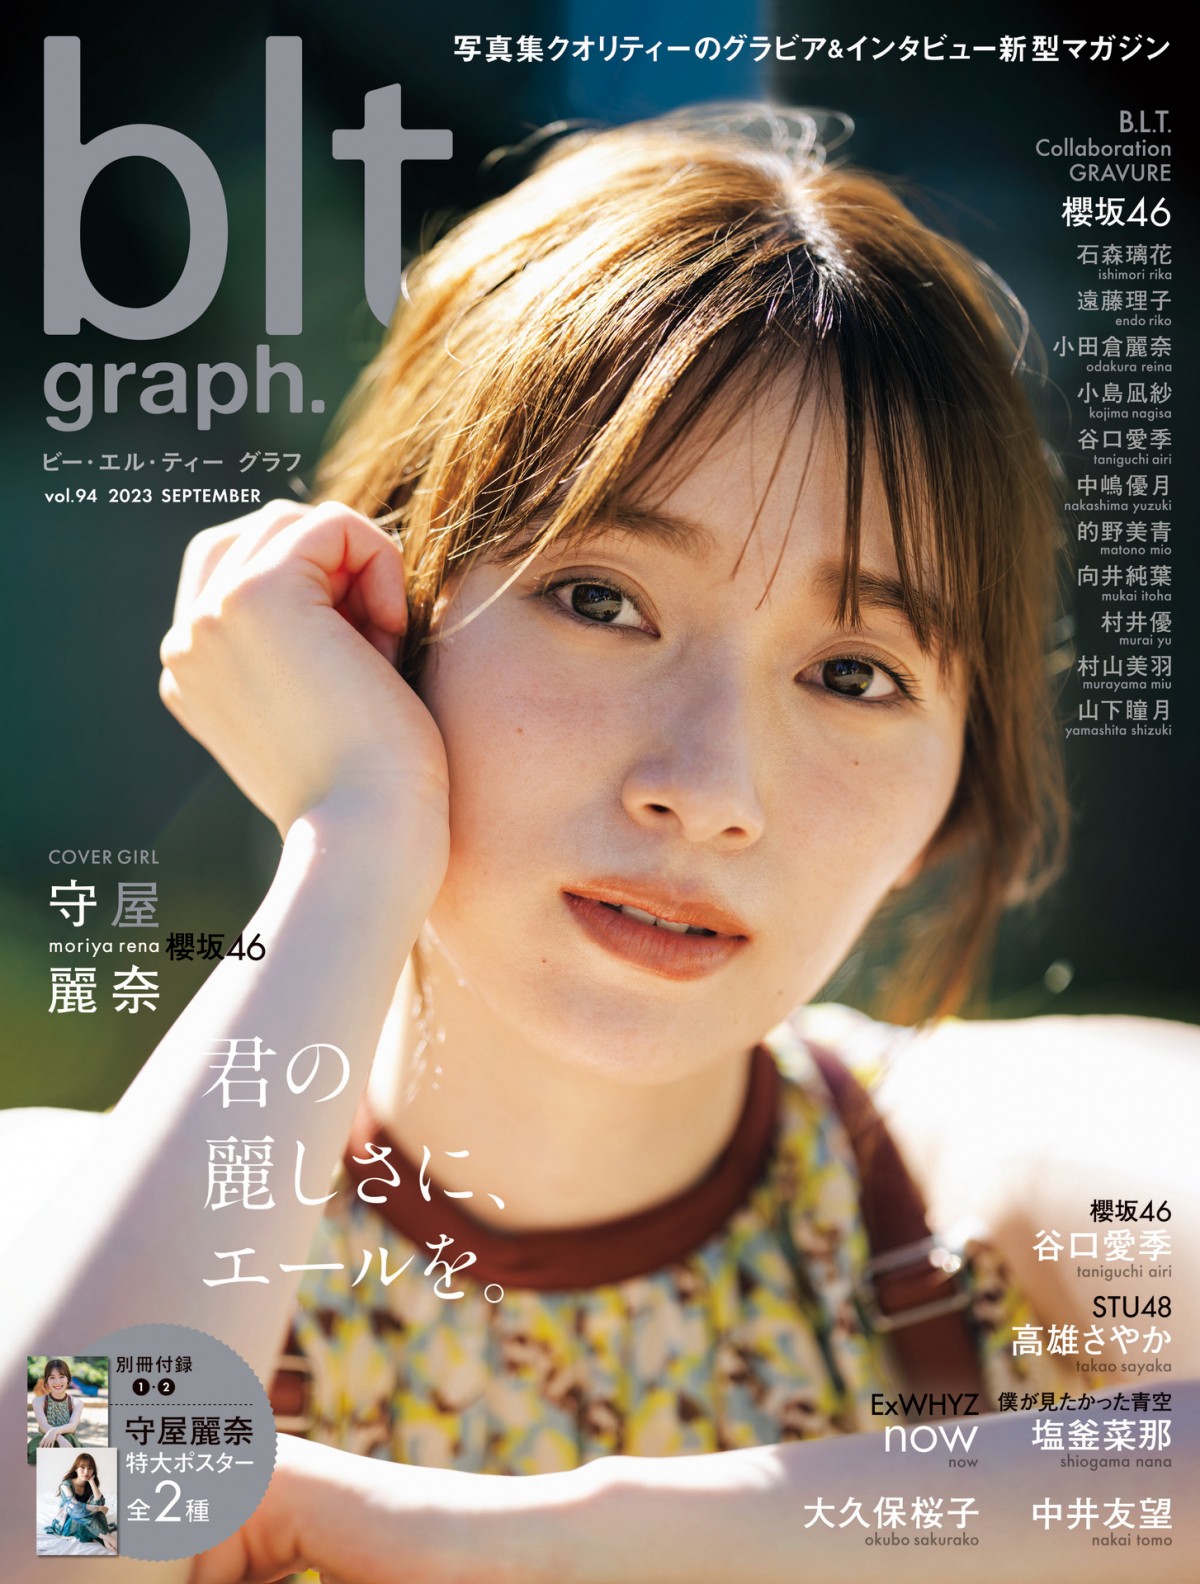 櫻坂46守屋麗奈、大人の姿で魅了 『blt graph.』表紙カット解禁 